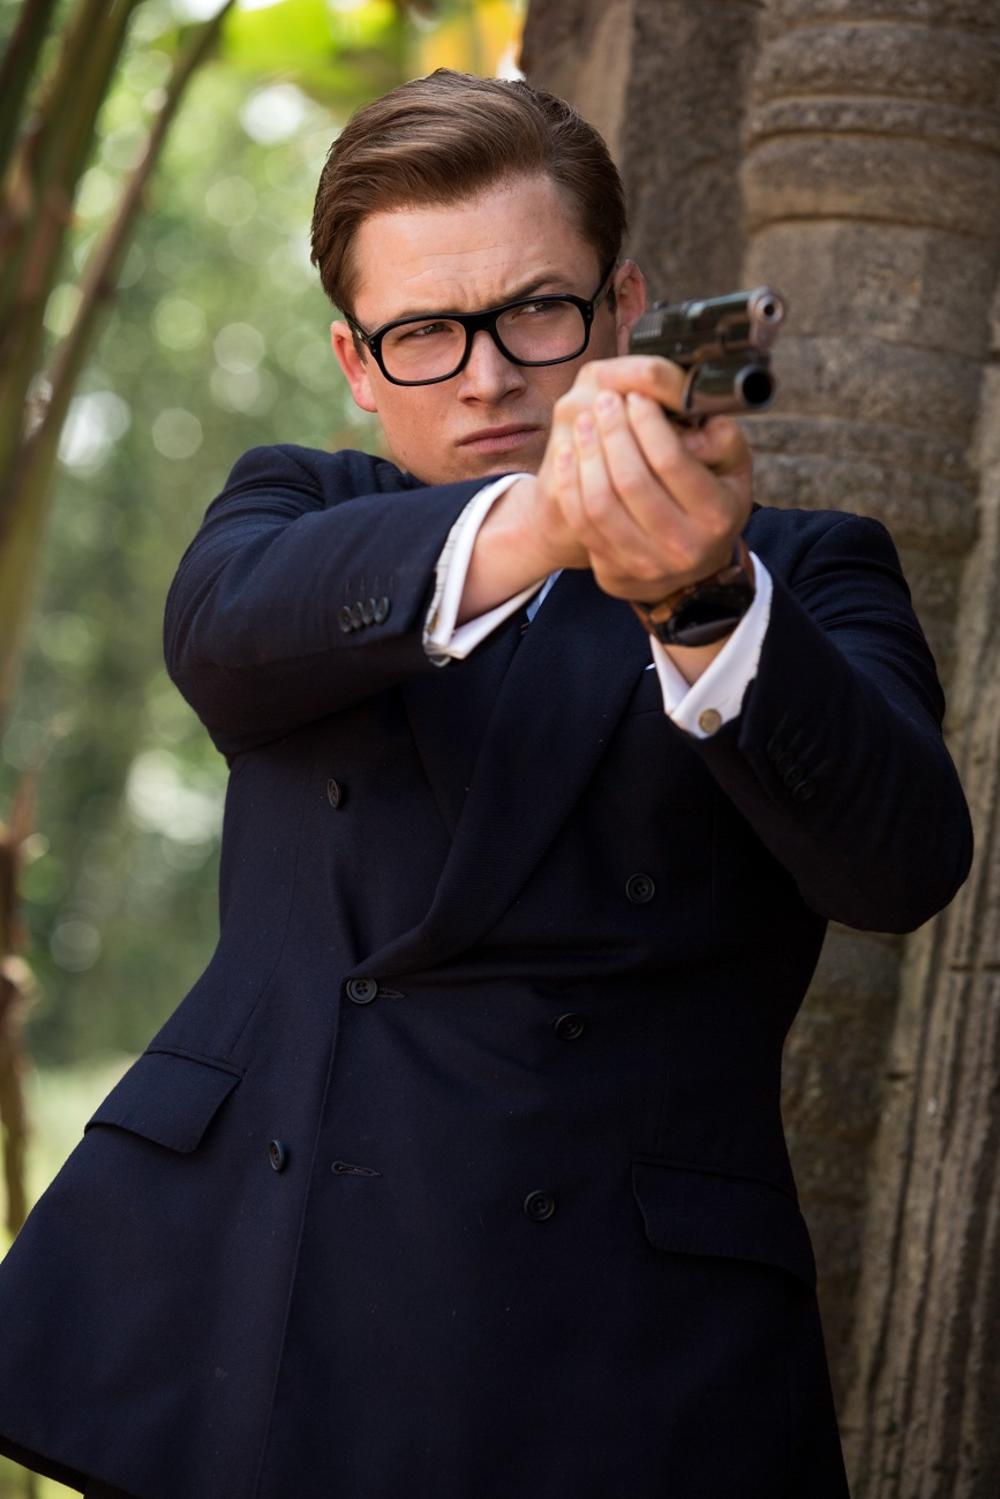 <p>Drugi deo urnebesne akcione komedije o britanskim špijunima "Kingsman: Zlatni krug" stiže u bioskope 21. septembra. <strong>Teron Edžerton </strong>se vraća kao Egzi, mladić koji je u prvom delu filma izabran za novog pripadnika nezavisne, međunarodne obaveštajne agencije Kingsman.</p>